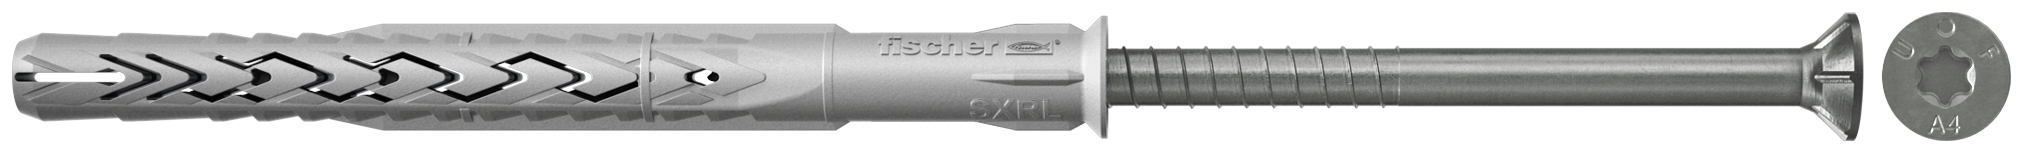 fischer Tasselli prolungati SXRL 8x120 T A4 (1 Pz.) Tassello prolungato in nylon con marcatura CE con vite premontata in acciaio inox A4, T.S.P. impronta torx.